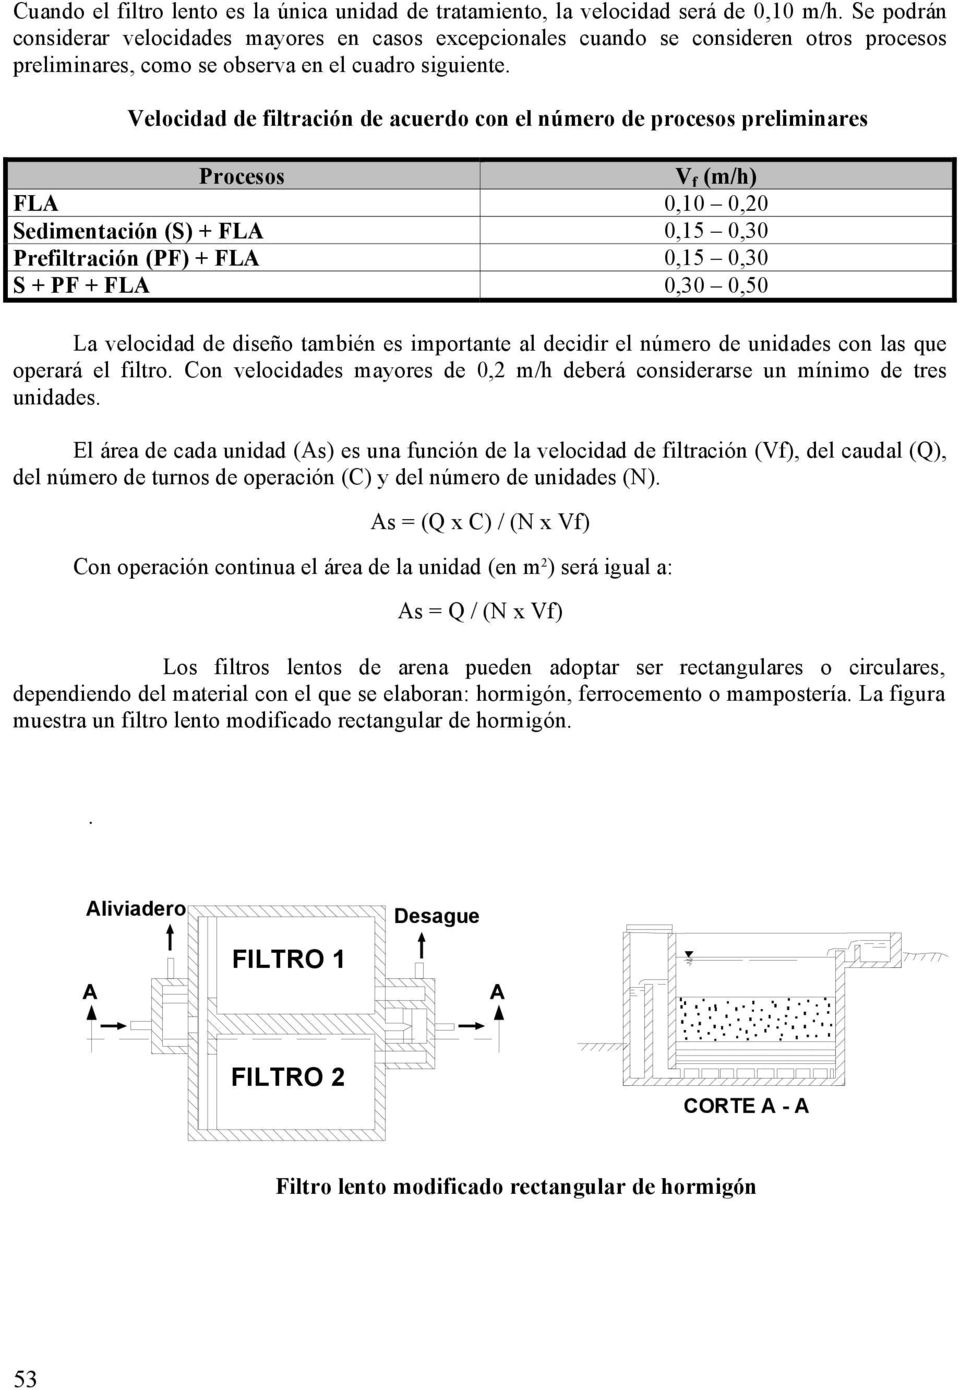 Veocidad de fitración de acuerdo con e número de procesos preiminares Procesos V f (m/h) FLA 0,10 0,20 Sedimentación (S) + FLA 0,15 0,30 Prefitración (PF) + FLA 0,15 0,30 S + PF + FLA 0,30 0,50 La